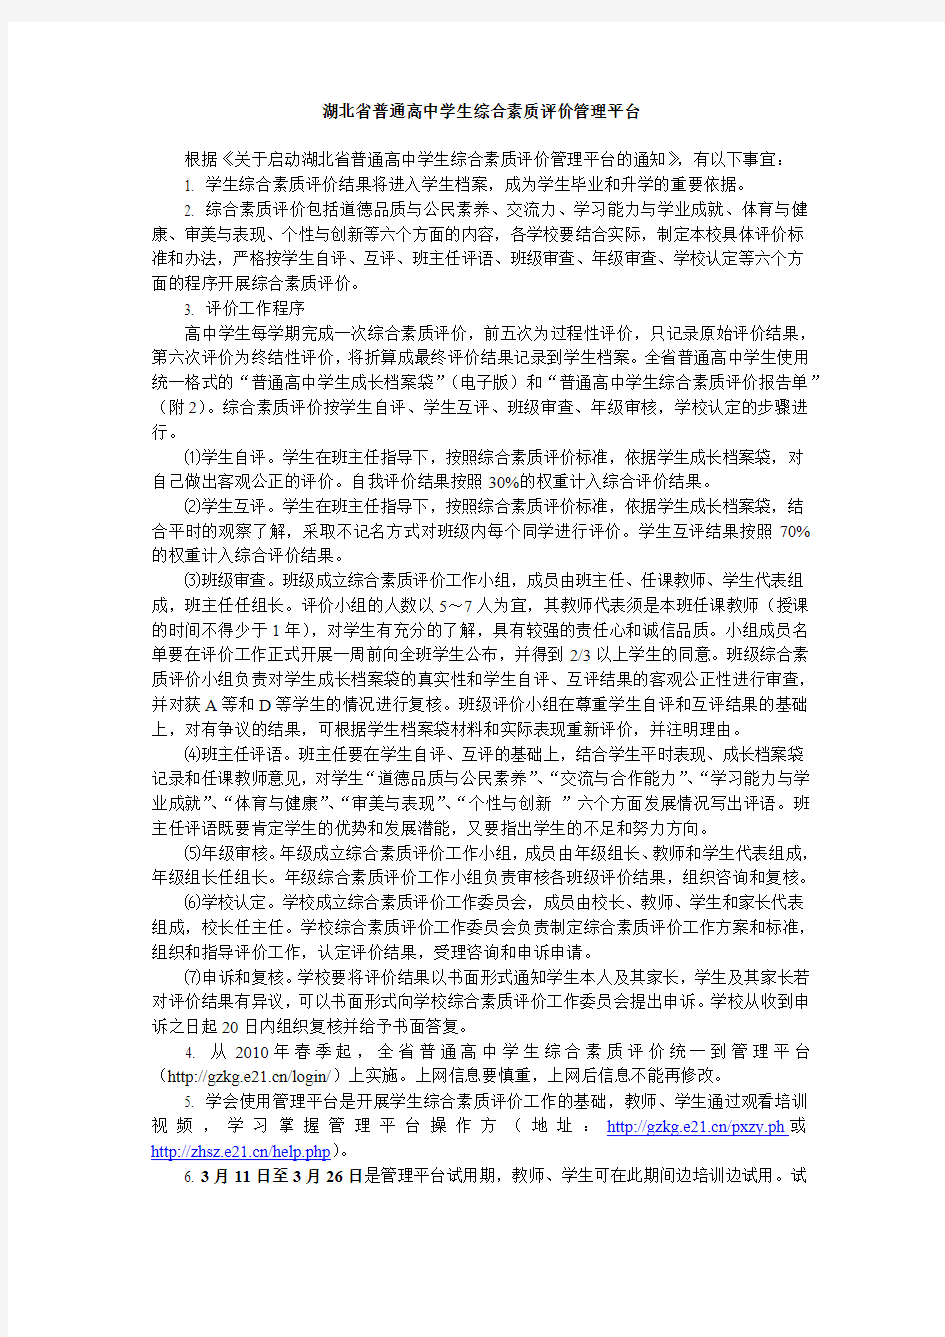 湖北省普通高中学生综合素质评价管理平台